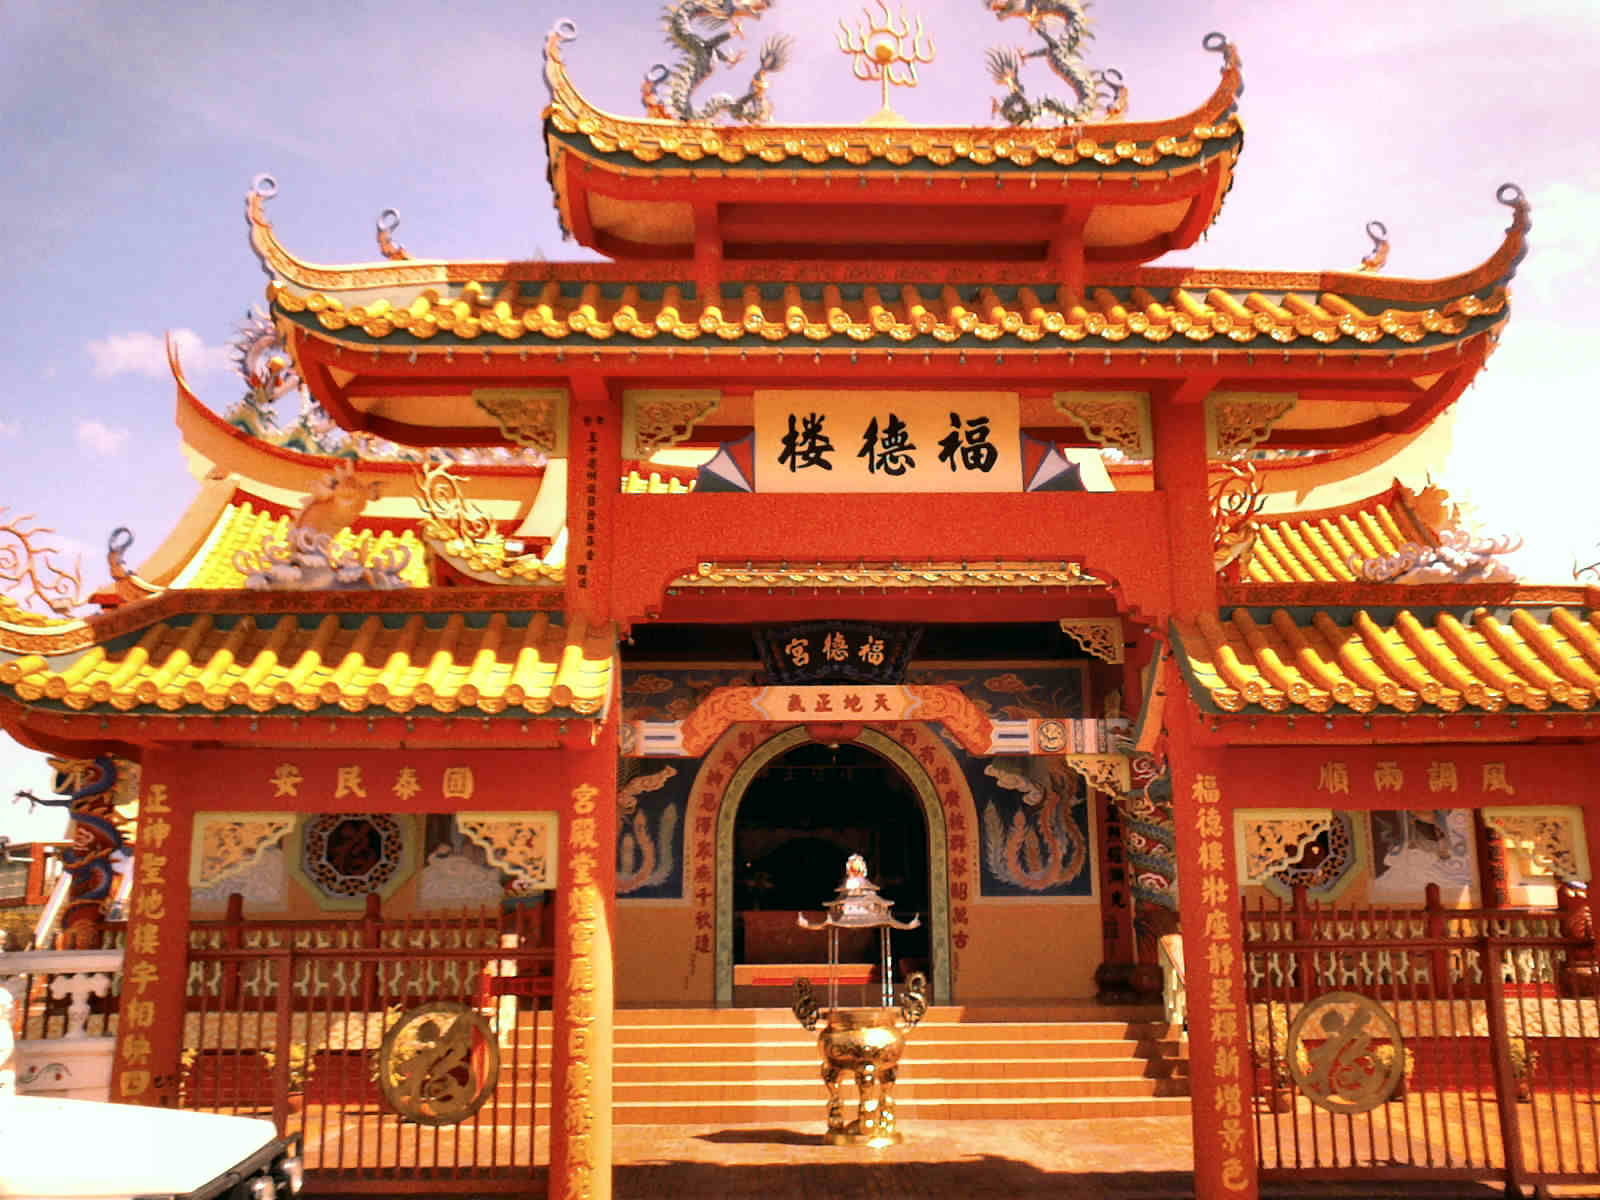 Ancient Asian Temples Hdr Wallpaperdigitalresult.com